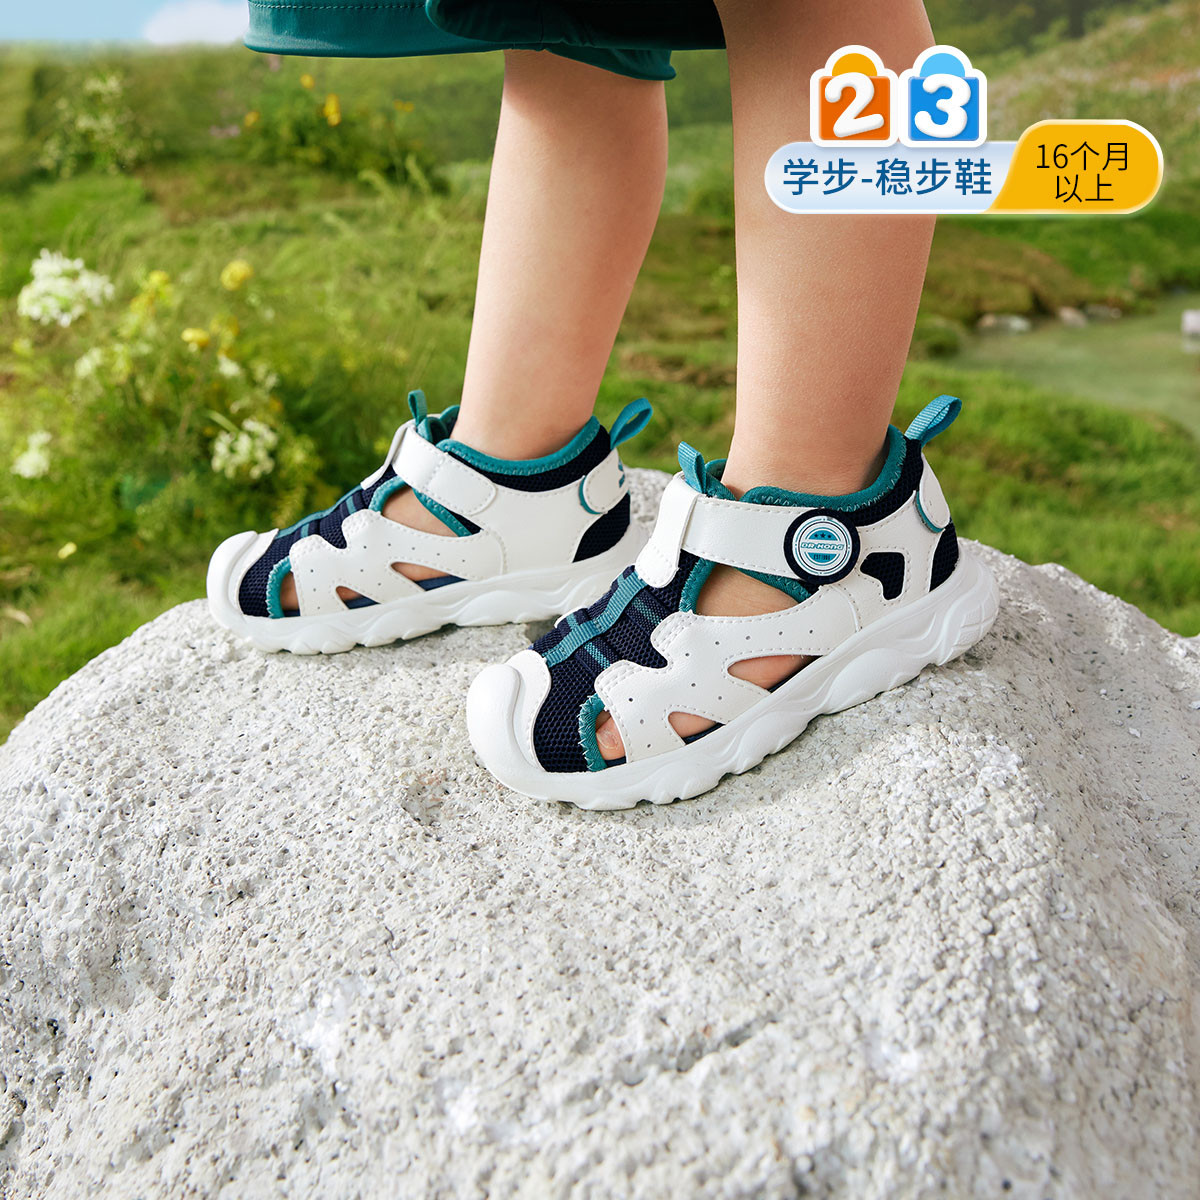 夏季男女童舒适运动风宝宝透气幼儿潮流国货儿童学步凉鞋